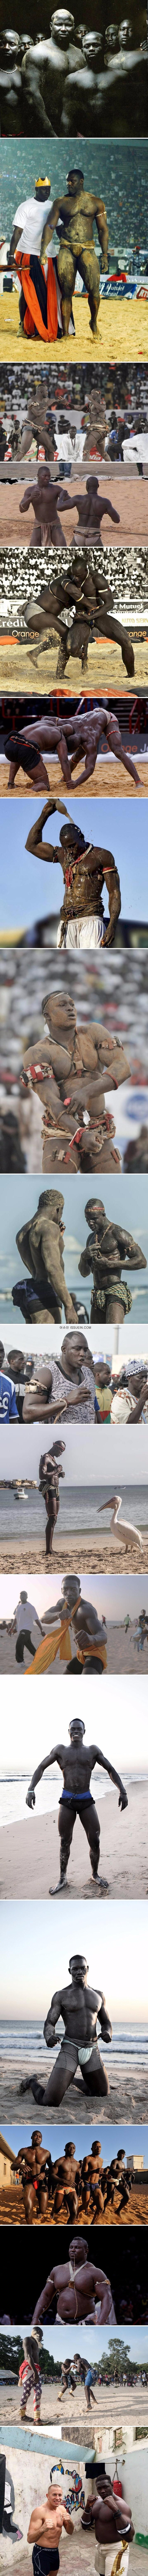 セネガルの伝統格闘技選手たち